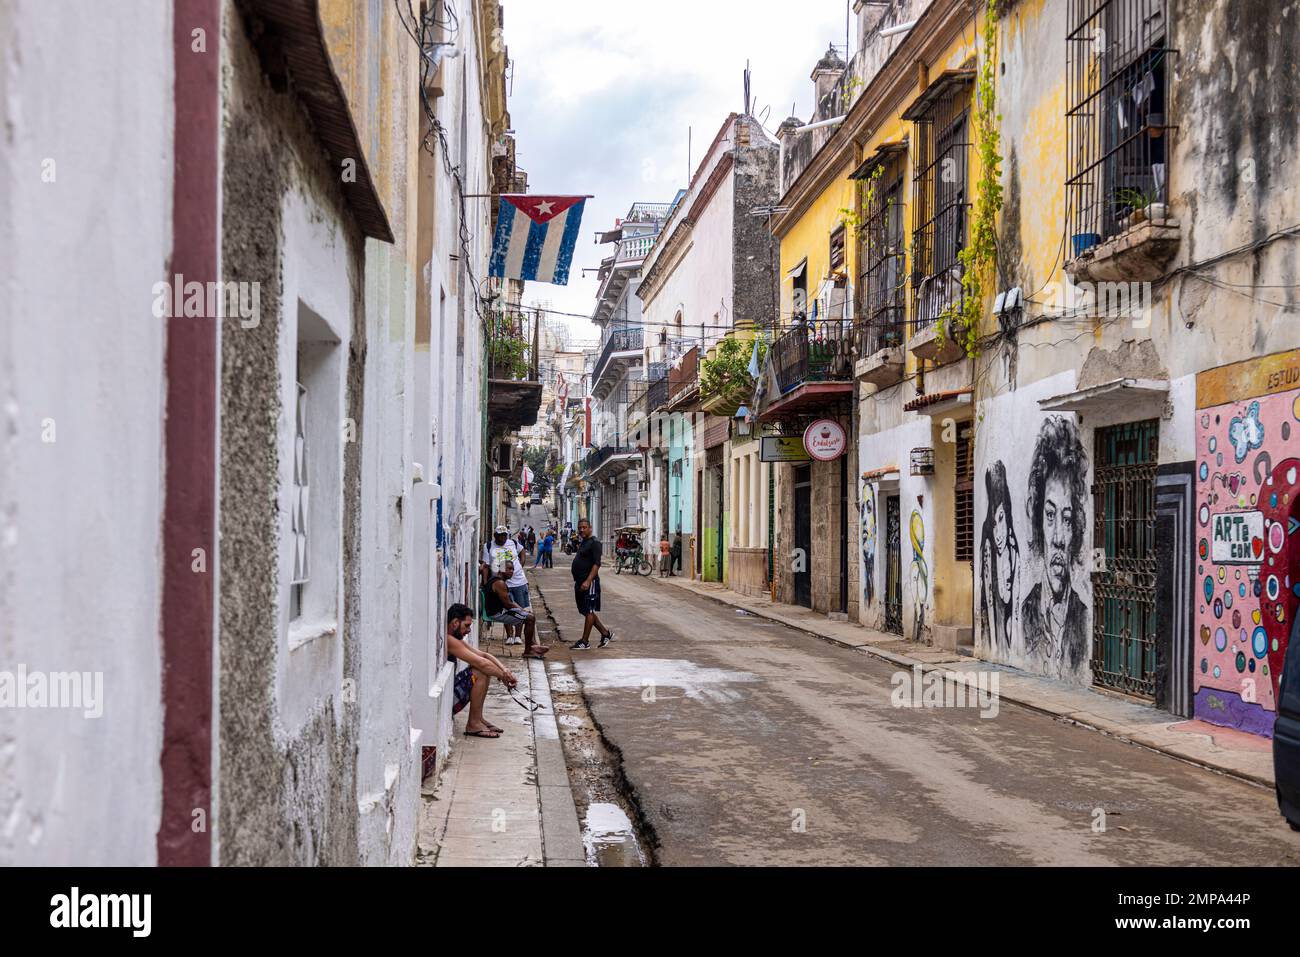 Street with Cuban flag, Old Havana, Cuba Stock Photo